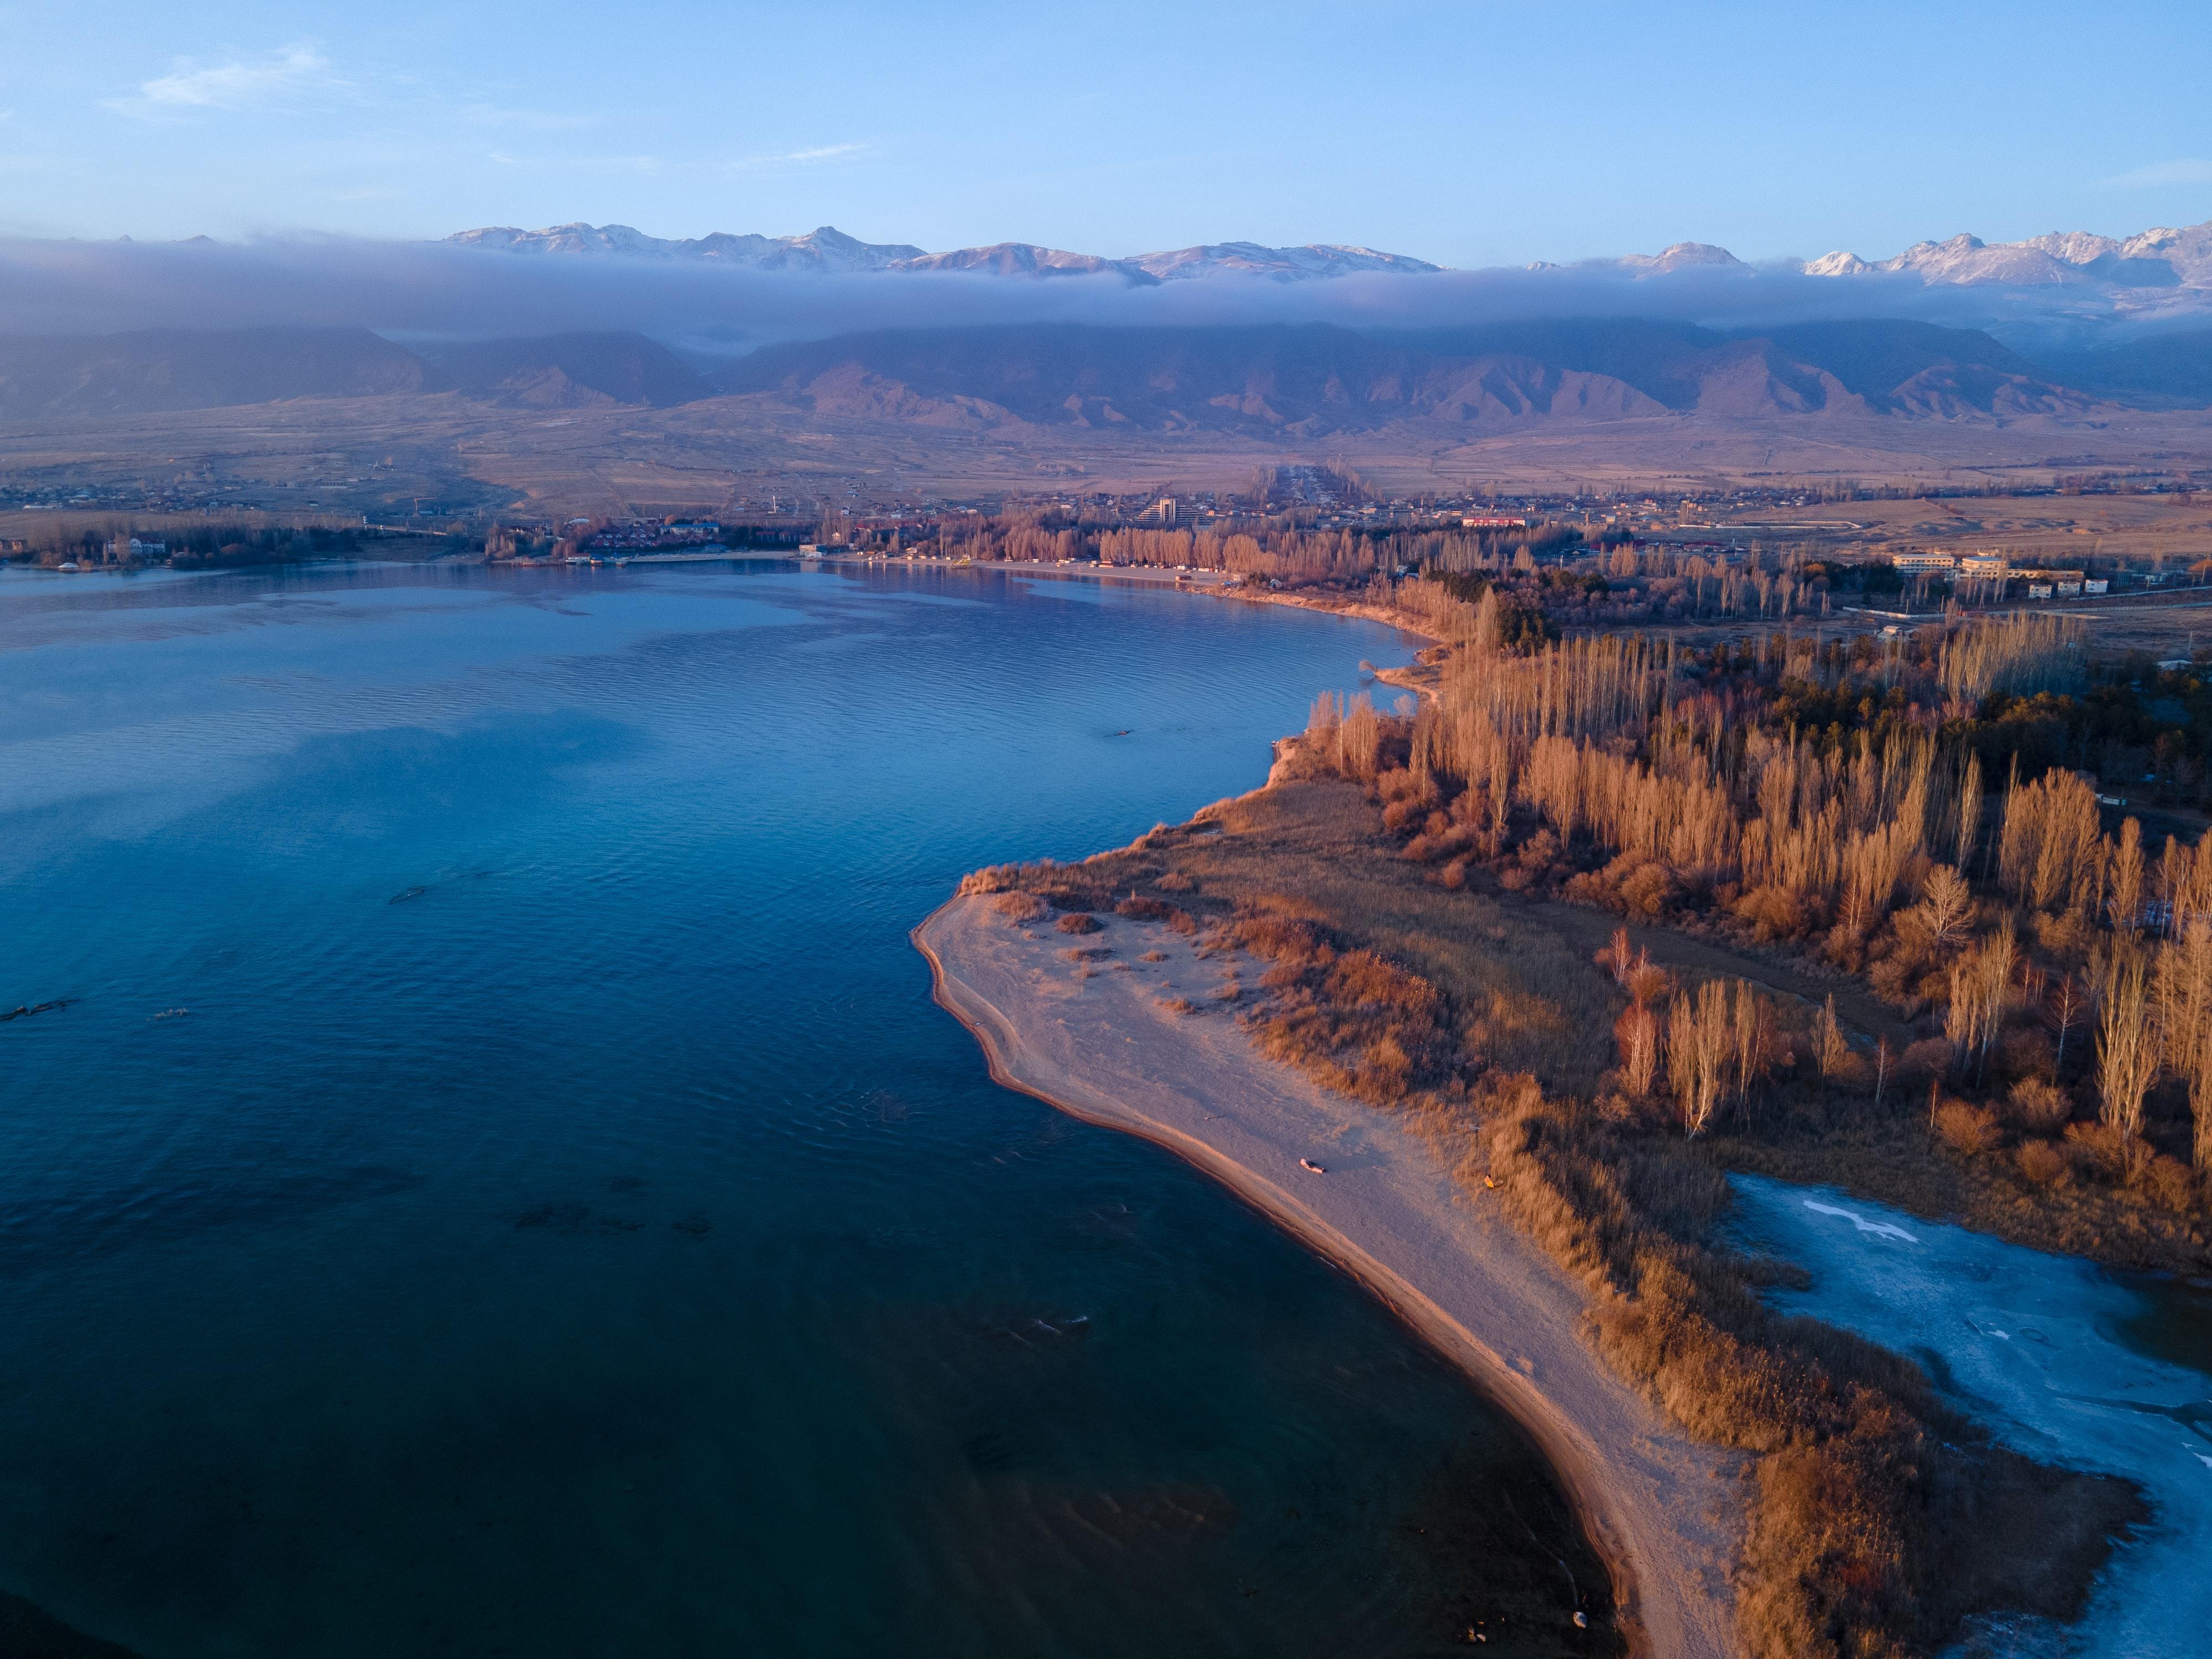 Issyk-Kul (Kyrgyzstan) lake in winter